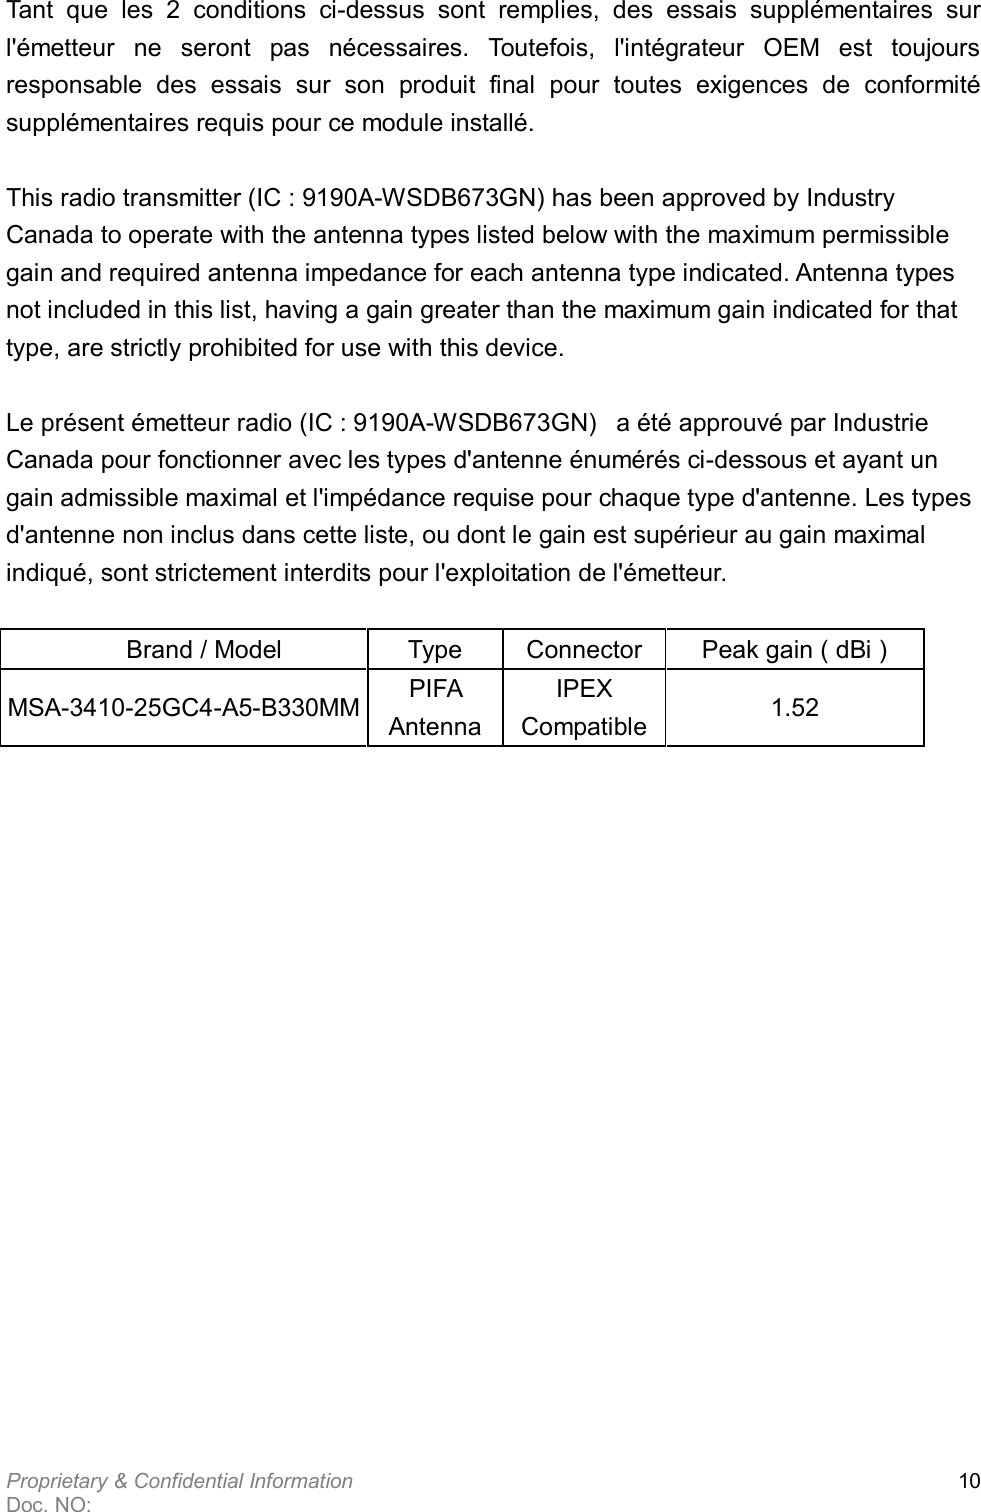  Proprietary &amp; Confidential Information   Doc. NO:   10  Tant  que  les  2  conditions  ci-dessus  sont  remplies,  des  essais  supplémentaires  sur l&apos;émetteur  ne  seront  pas  nécessaires.  Toutefois,  l&apos;intégrateur  OEM  est  toujours responsable  des  essais  sur  son  produit  final  pour  toutes  exigences  de  conformité supplémentaires requis pour ce module installé.  This radio transmitter (IC : 9190A-WSDB673GN) has been approved by Industry Canada to operate with the antenna types listed below with the maximum permissible gain and required antenna impedance for each antenna type indicated. Antenna types not included in this list, having a gain greater than the maximum gain indicated for that type, are strictly prohibited for use with this device.   Le présent émetteur radio (IC : 9190A-WSDB673GN)   a été approuvé par Industrie Canada pour fonctionner avec les types d&apos;antenne énumérés ci-dessous et ayant un gain admissible maximal et l&apos;impédance requise pour chaque type d&apos;antenne. Les types d&apos;antenne non inclus dans cette liste, ou dont le gain est supérieur au gain maximal indiqué, sont strictement interdits pour l&apos;exploitation de l&apos;émetteur.         Brand / Model  Type    Connector  Peak gain ( dBi ) MSA-3410-25GC4-A5-B330MM PIFA Antenna IPEX Compatible 1.52 